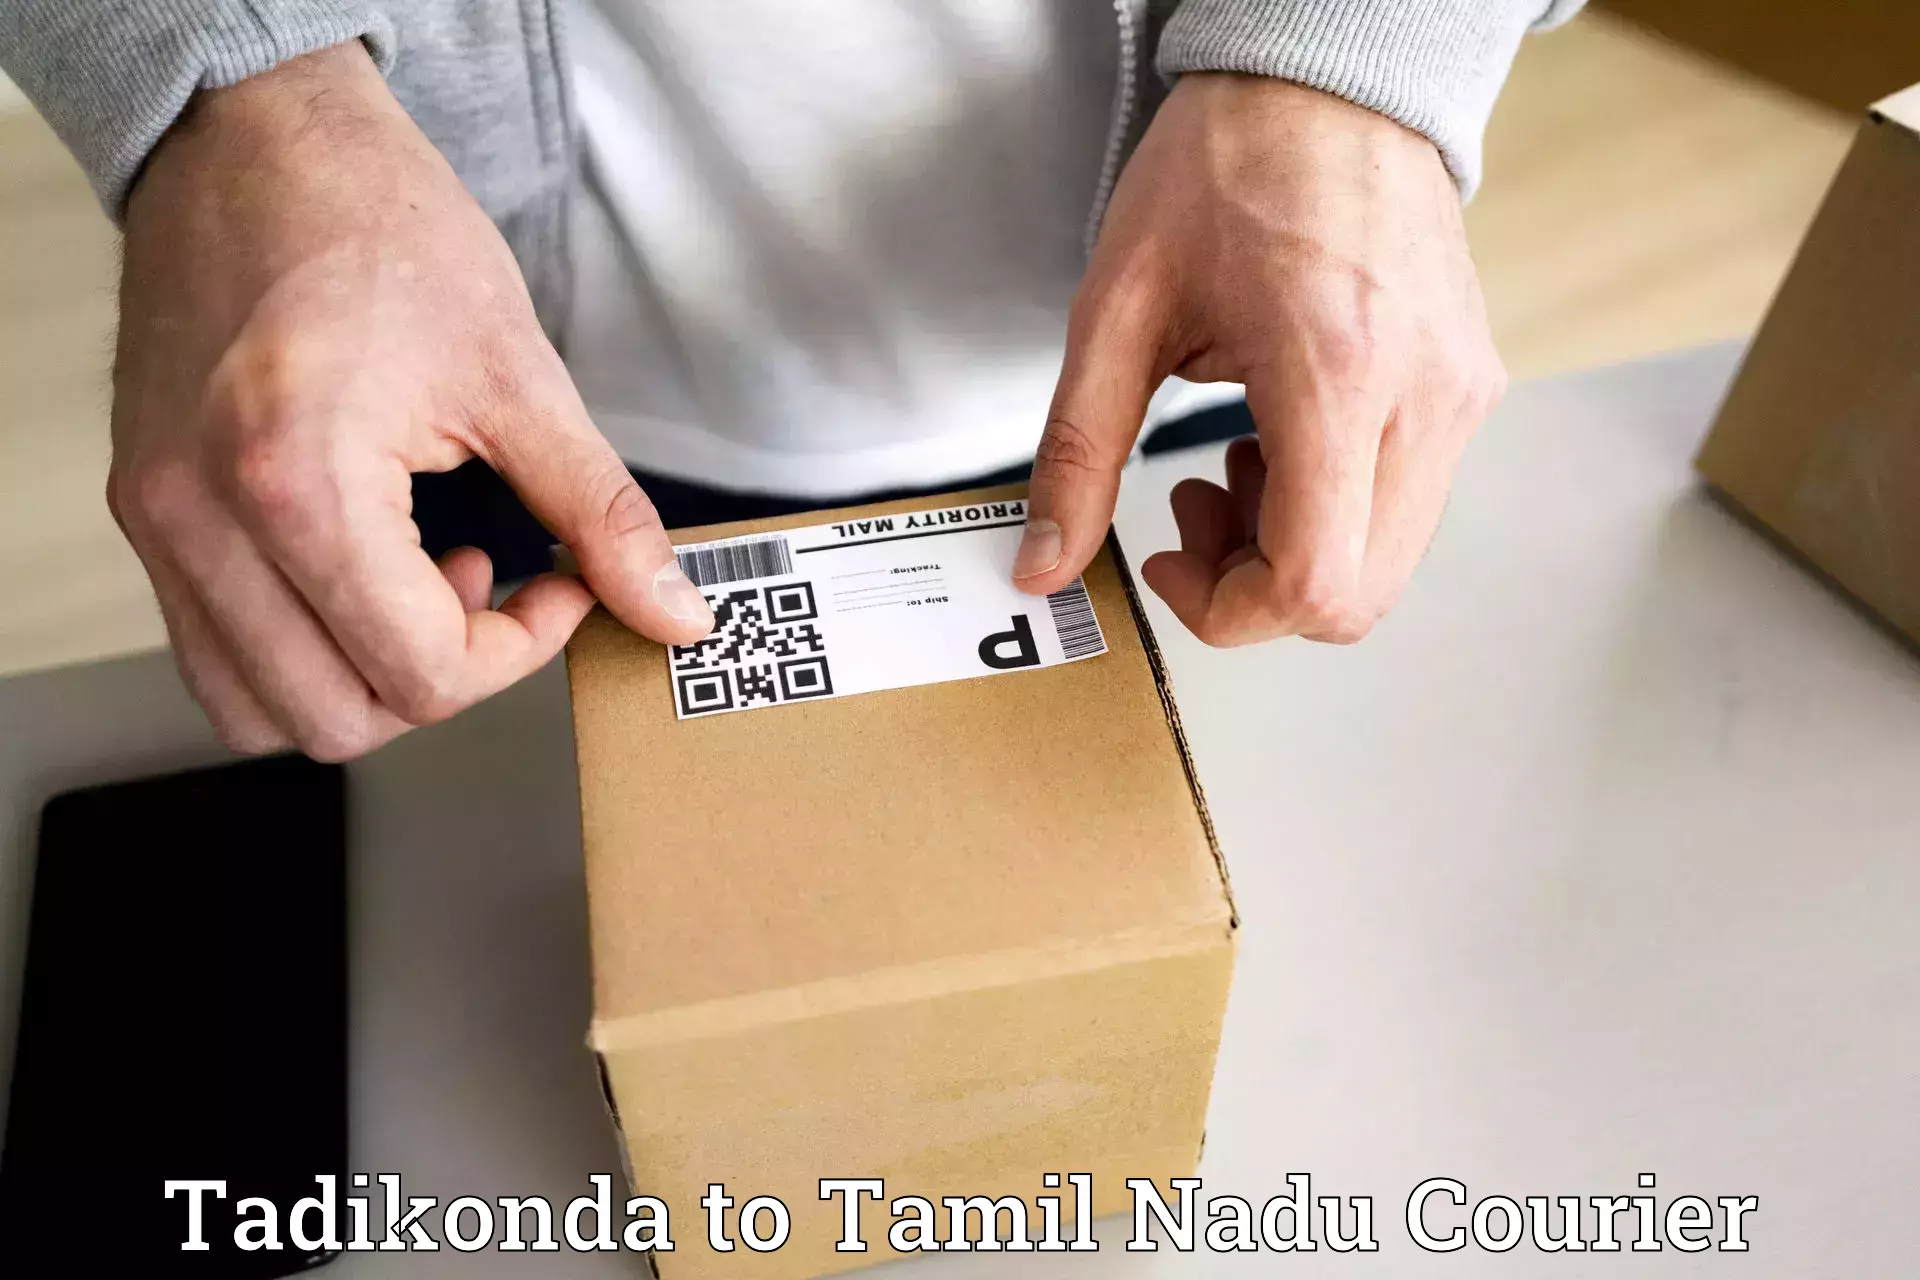 Speedy delivery service Tadikonda to Thiruvadanai